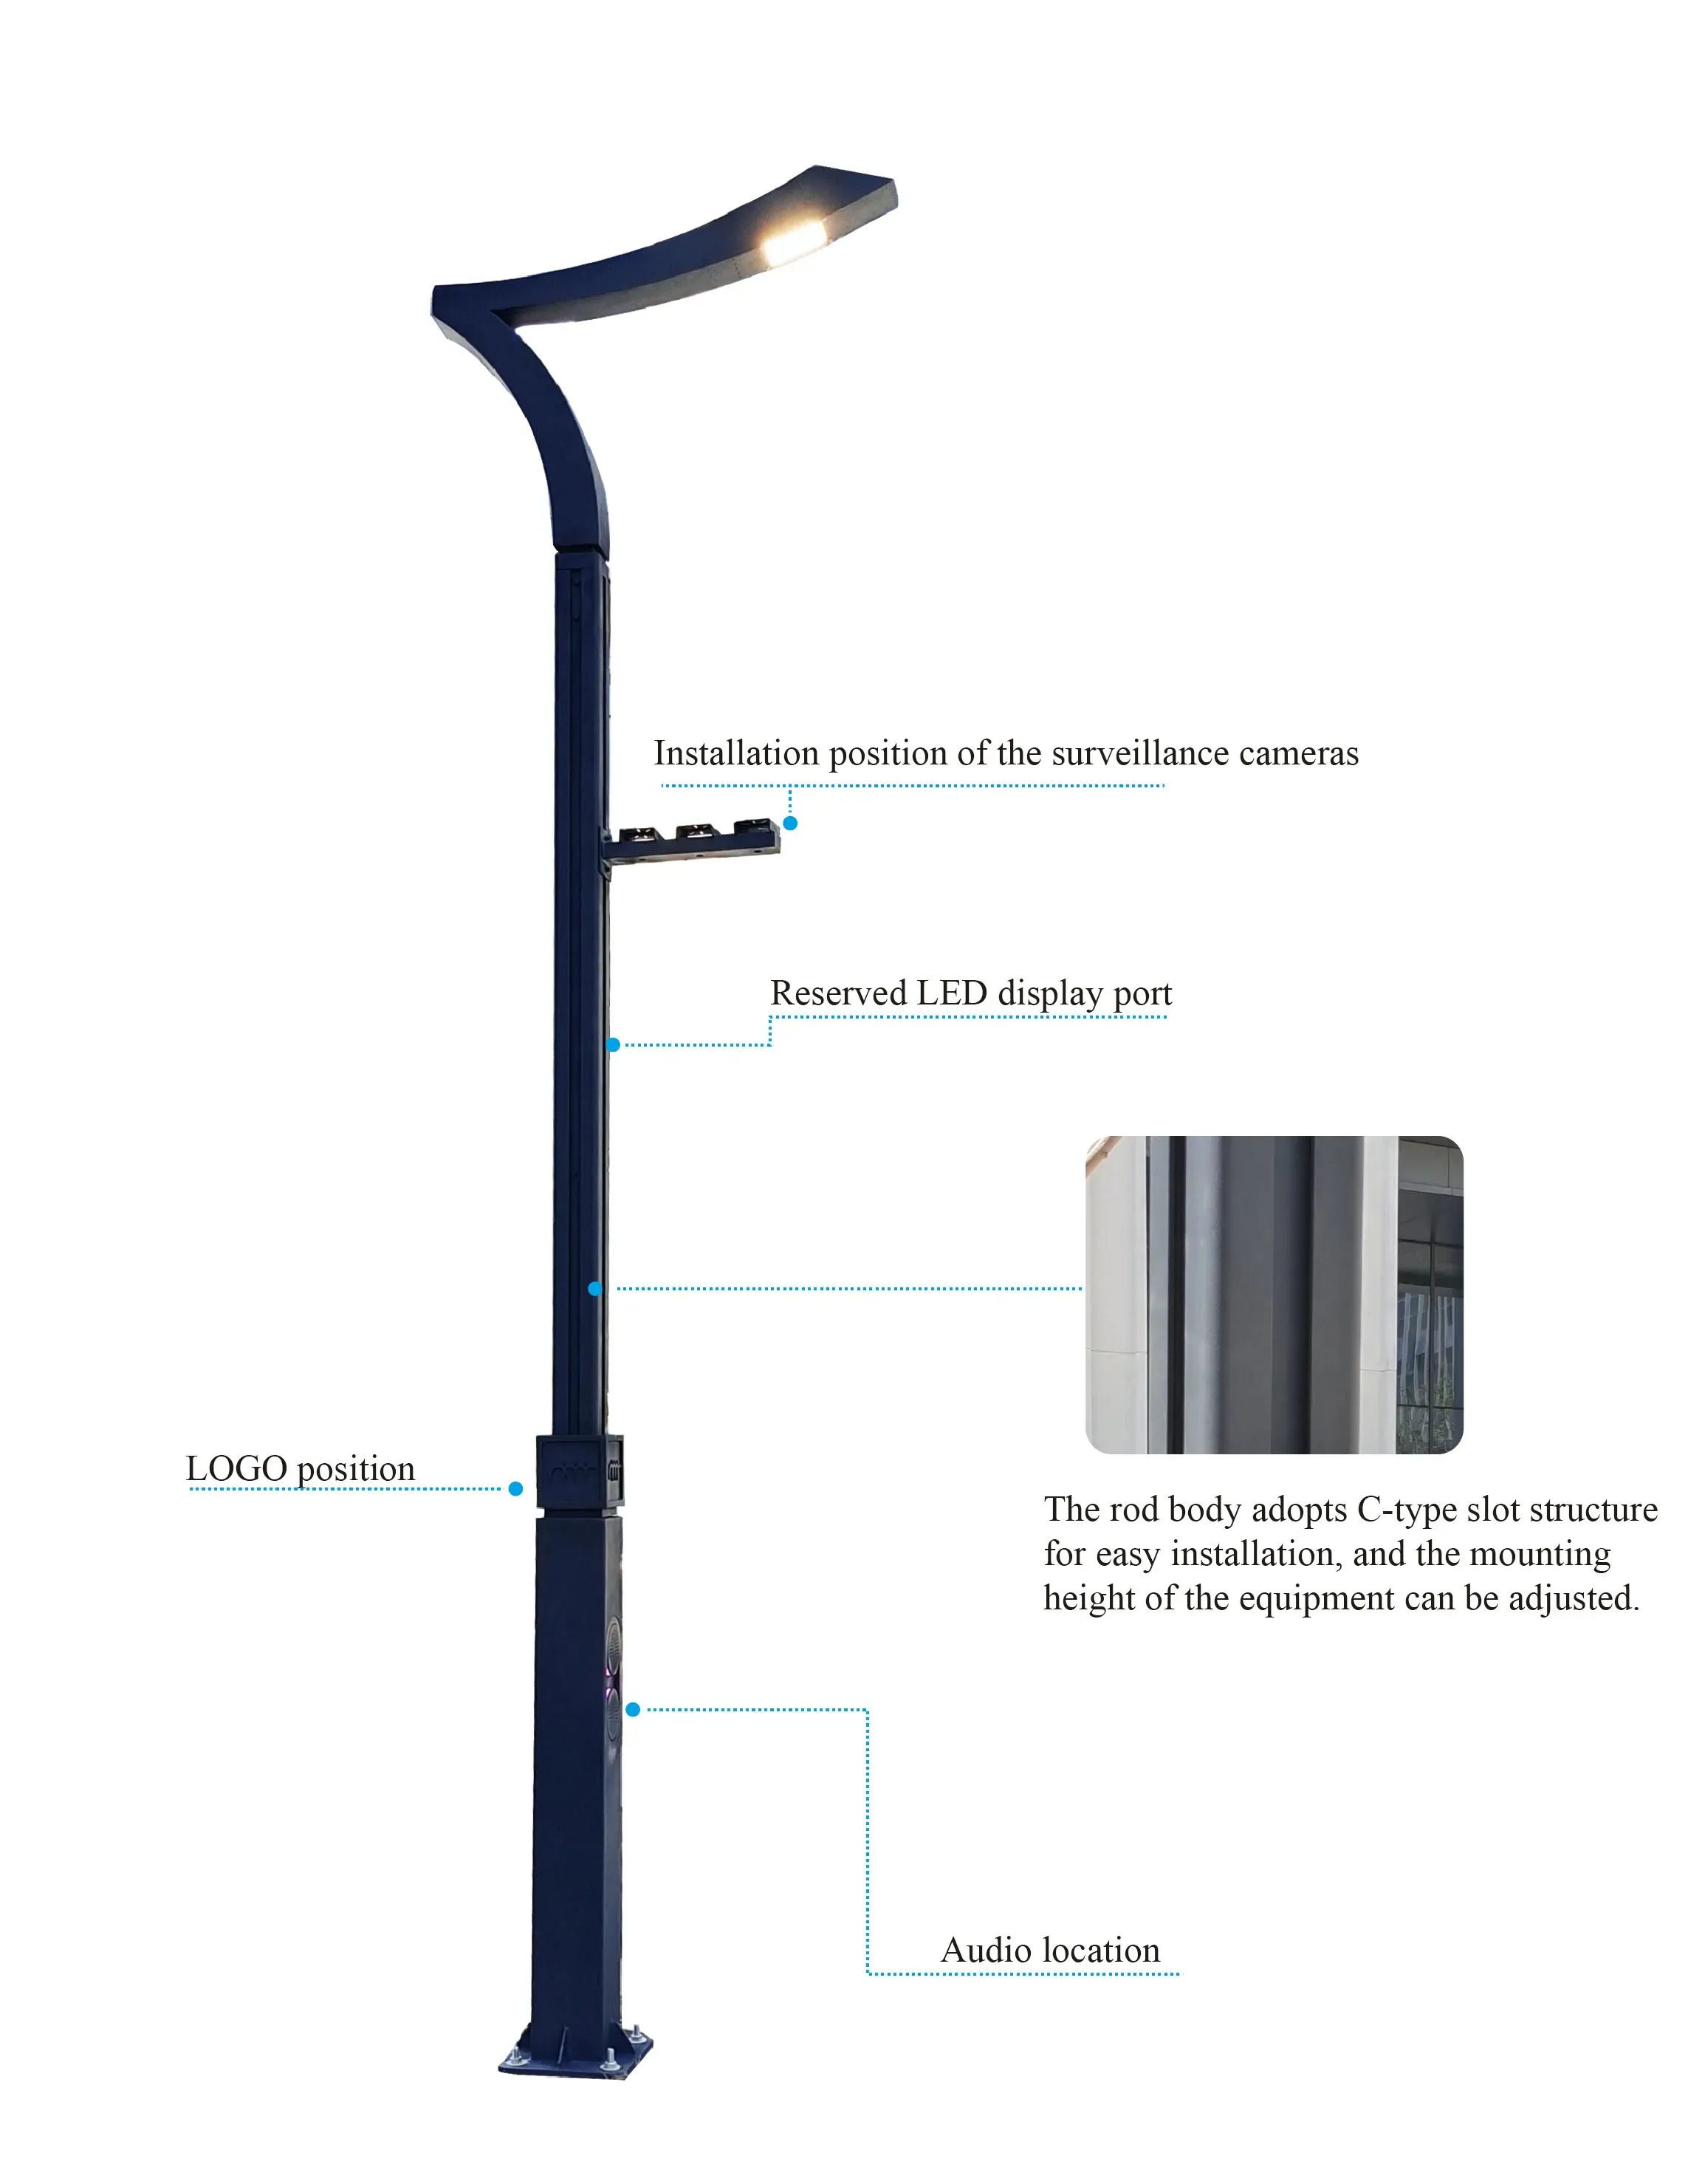 JYZHT001 neues Design Q235 AL 4,5 Meter hoch intelligenter Straßen laternen mast intelligenter LED-Straßen laternen mast